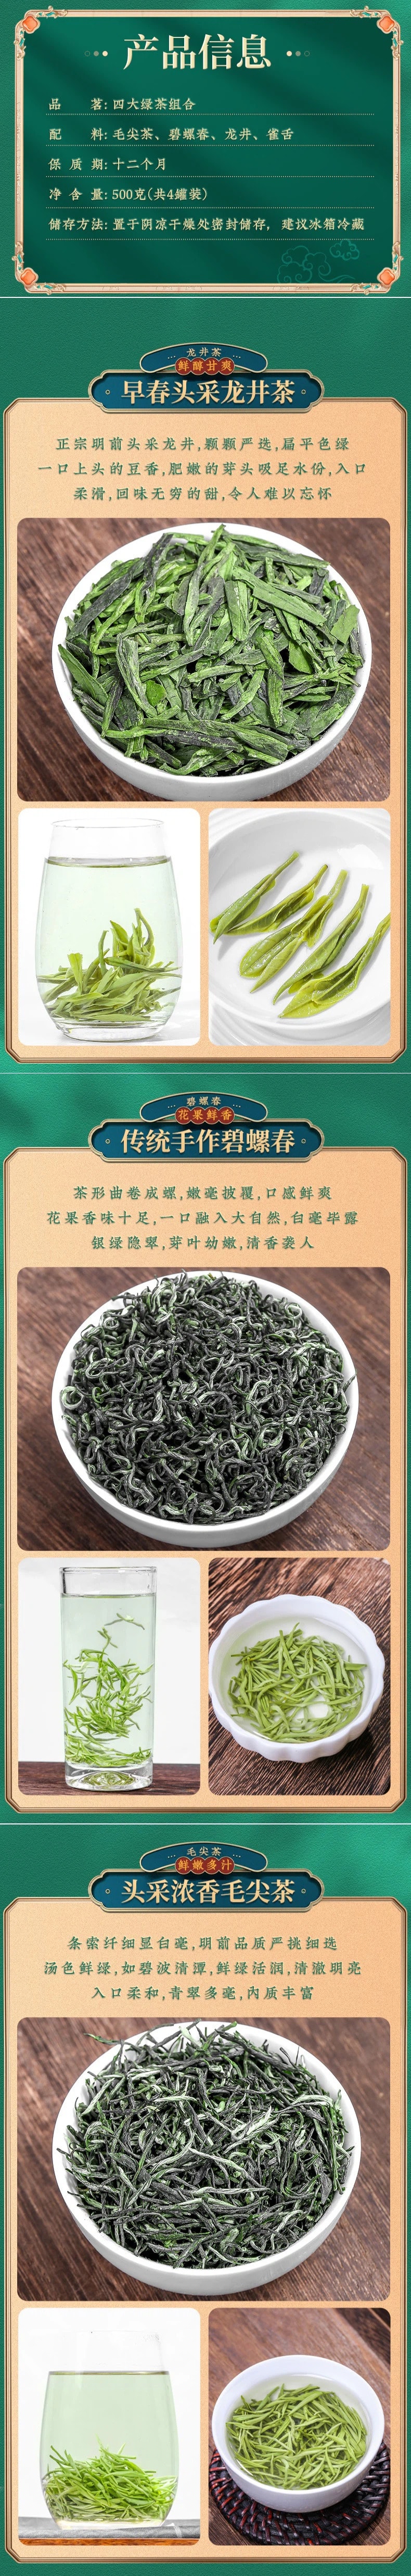 【中国直邮】绿茶茶叶 毛尖 碧螺春 龙井茶 雀舌 组合茶叶 共500g